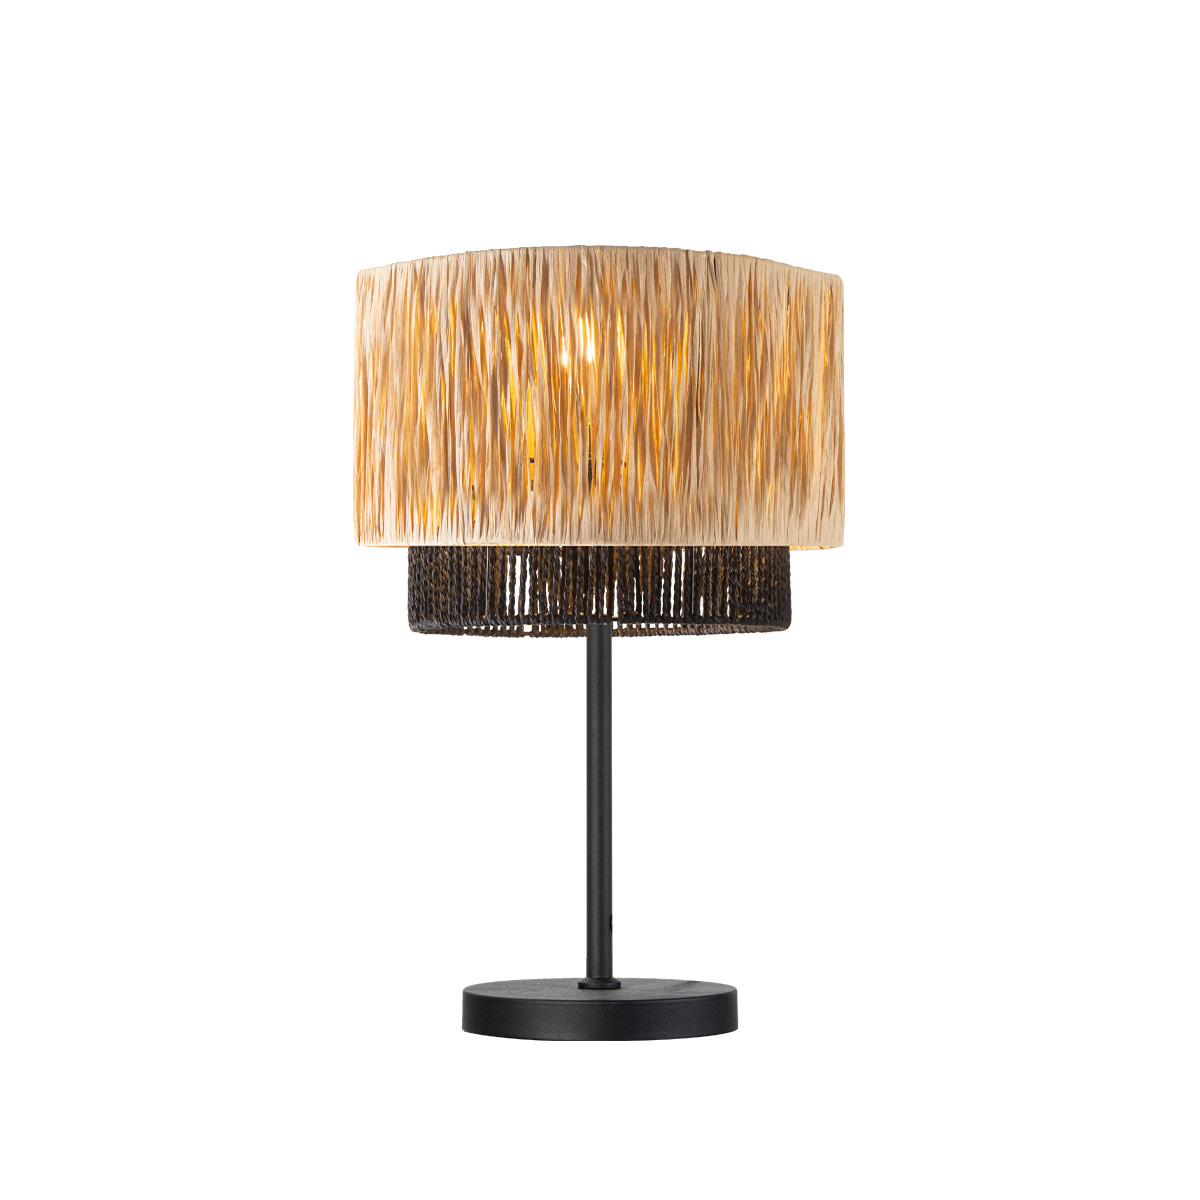 Tangla lighting - TLT7439-01NB - Table lamp 1 Light - sea grass + paper rope - sand black + natural - large - E27